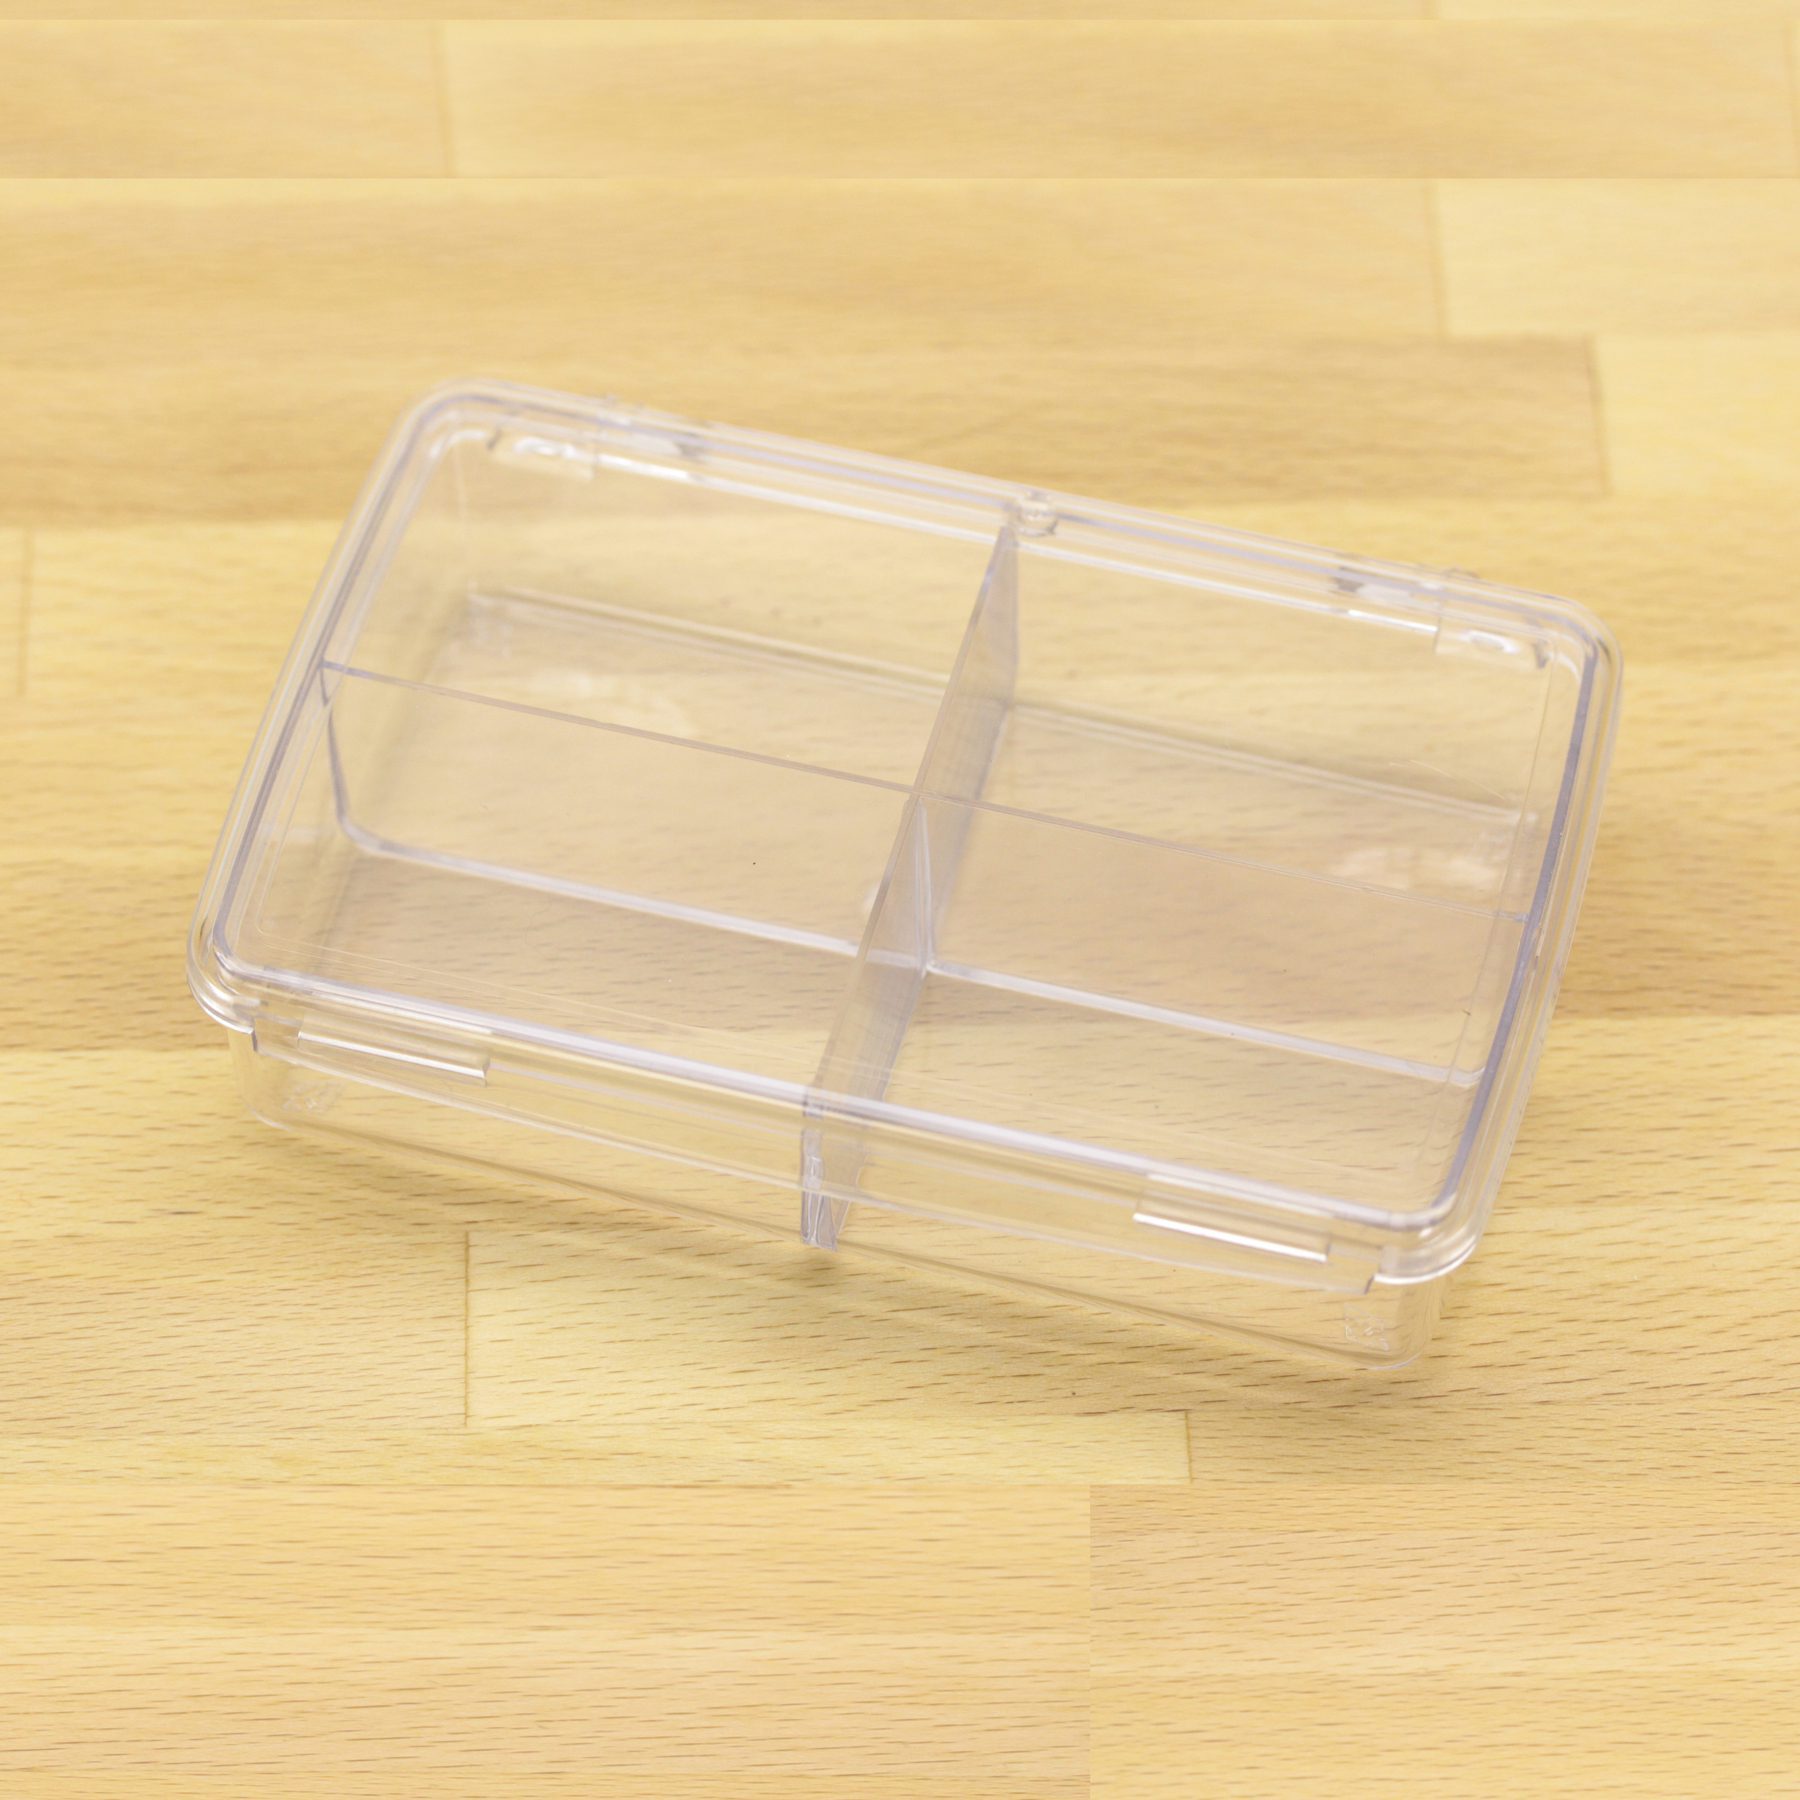 plastic box w 4 compartments